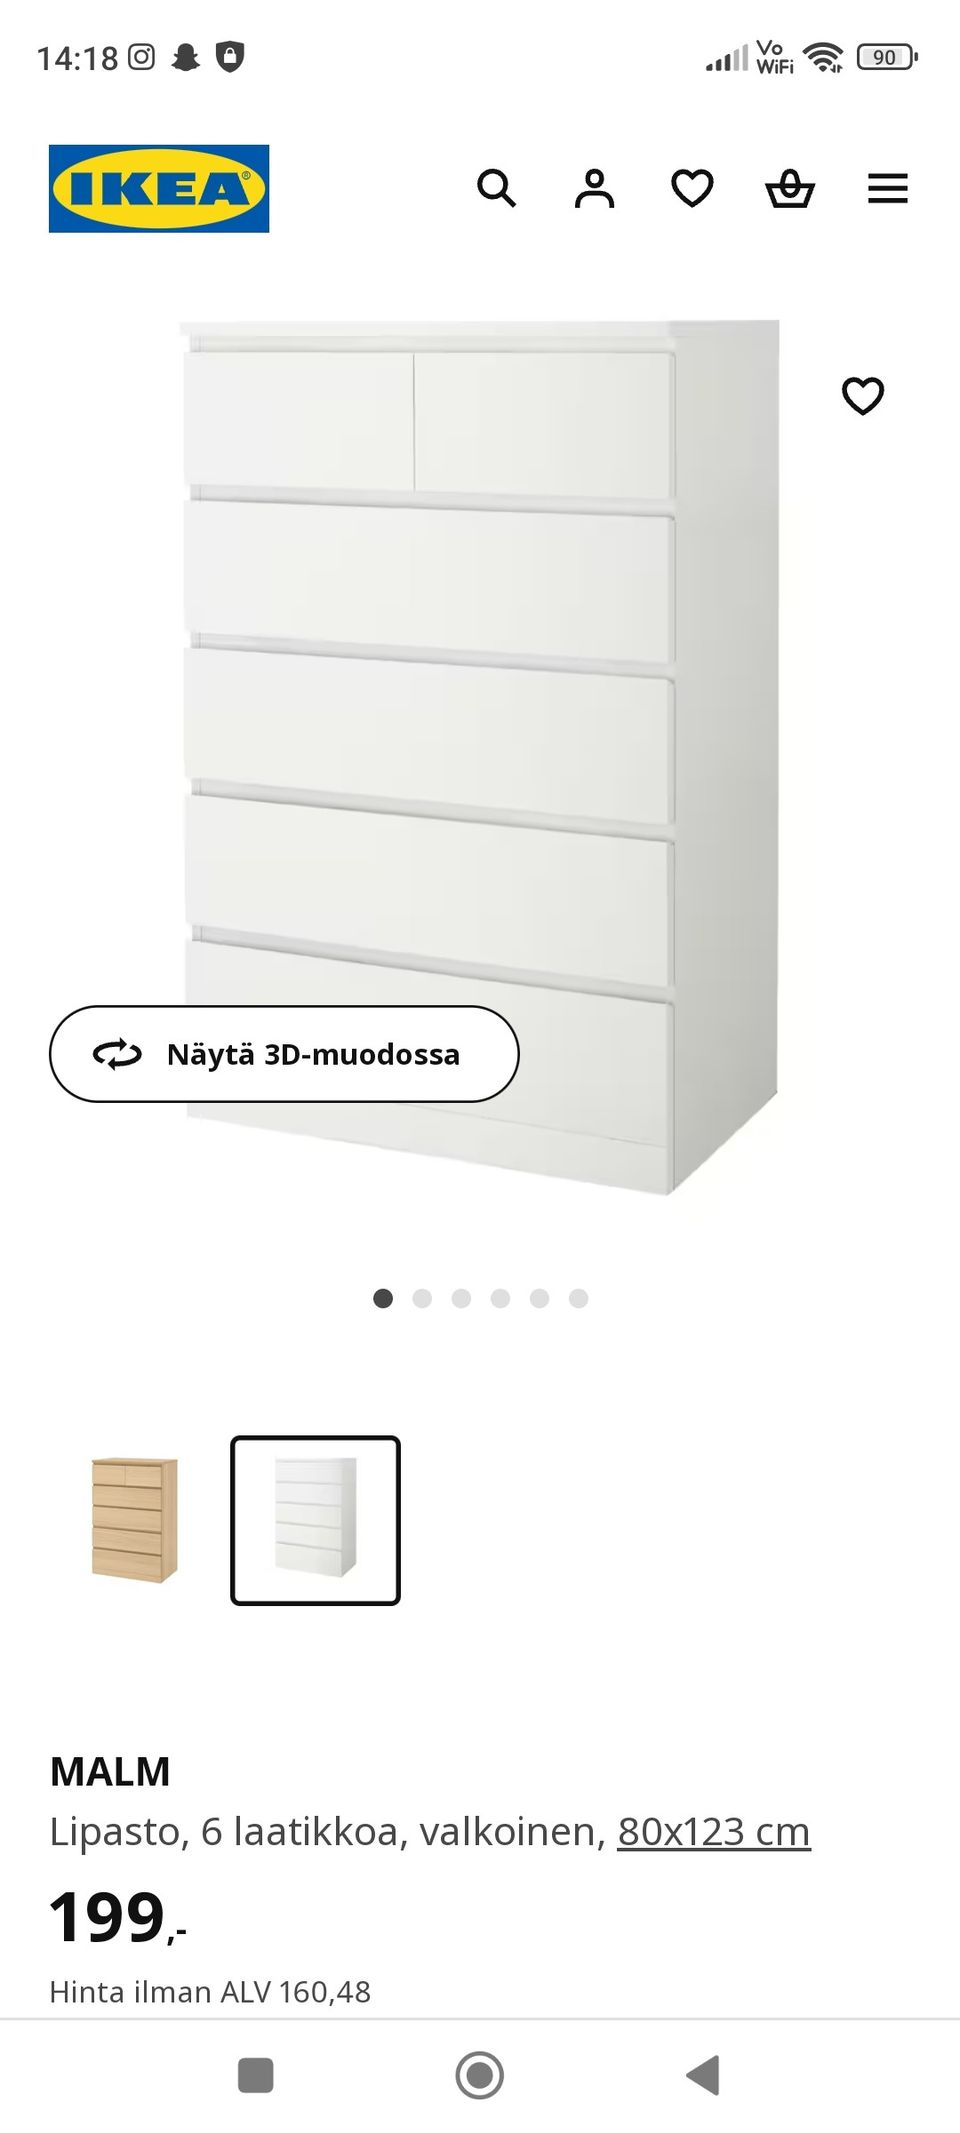 Ikea Malm lipasto, 6 laatikkoa